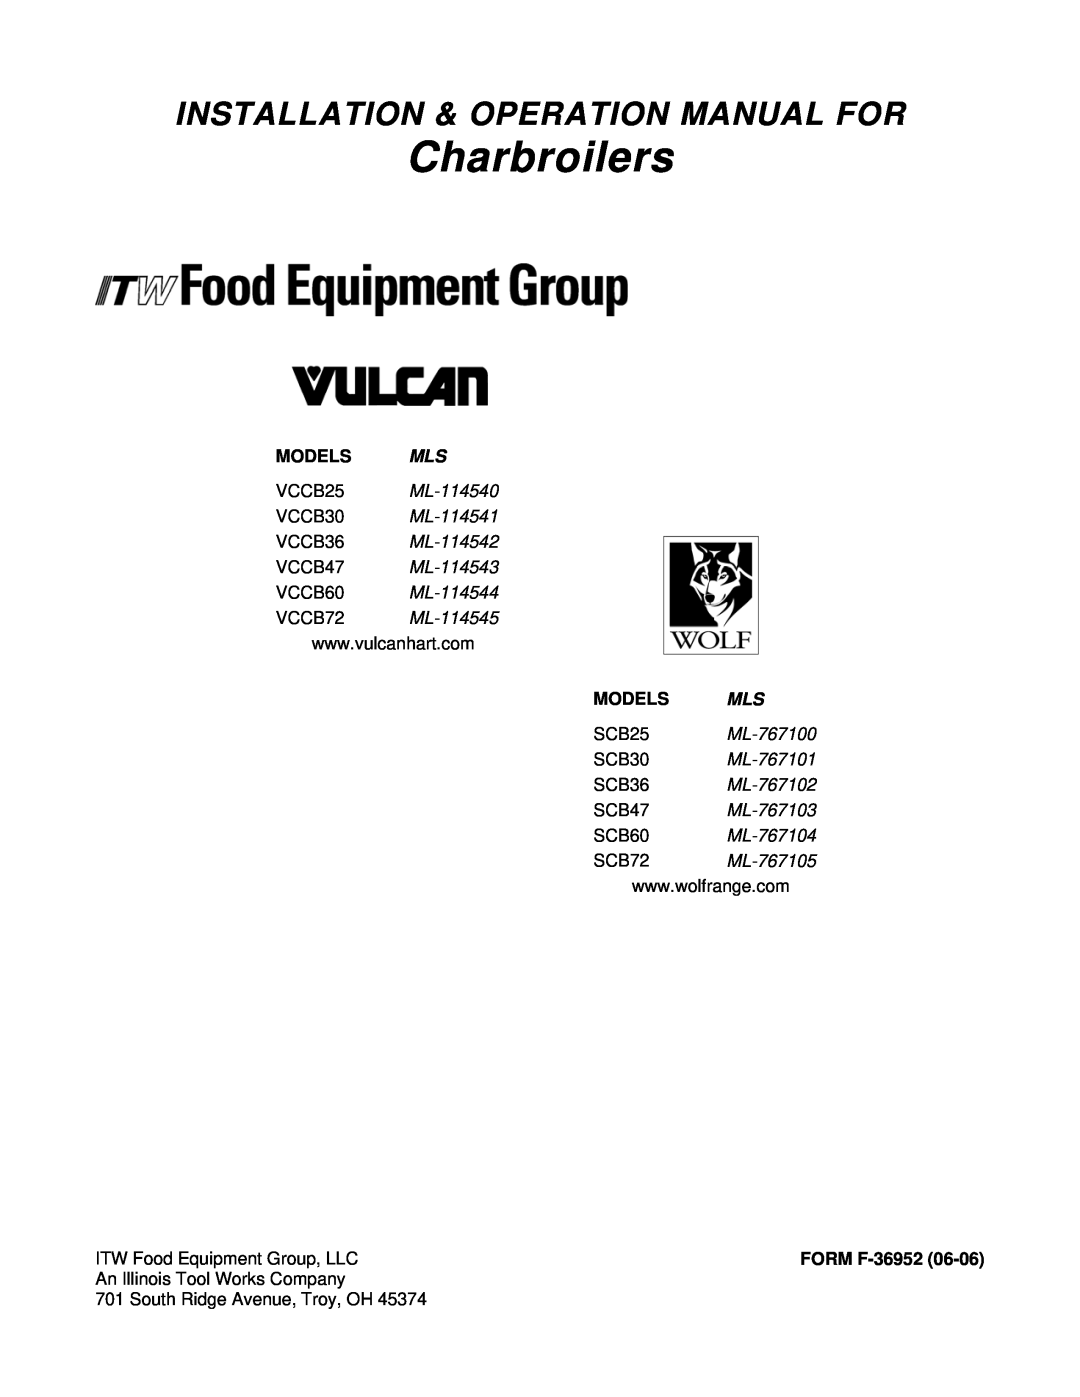 Vulcan-Hart VCCB60, VCCB72 operation manual Charbroilers, Models Mls, VCCB25 ML-114540 VCCB30 ML-114541, FORM F-36952 